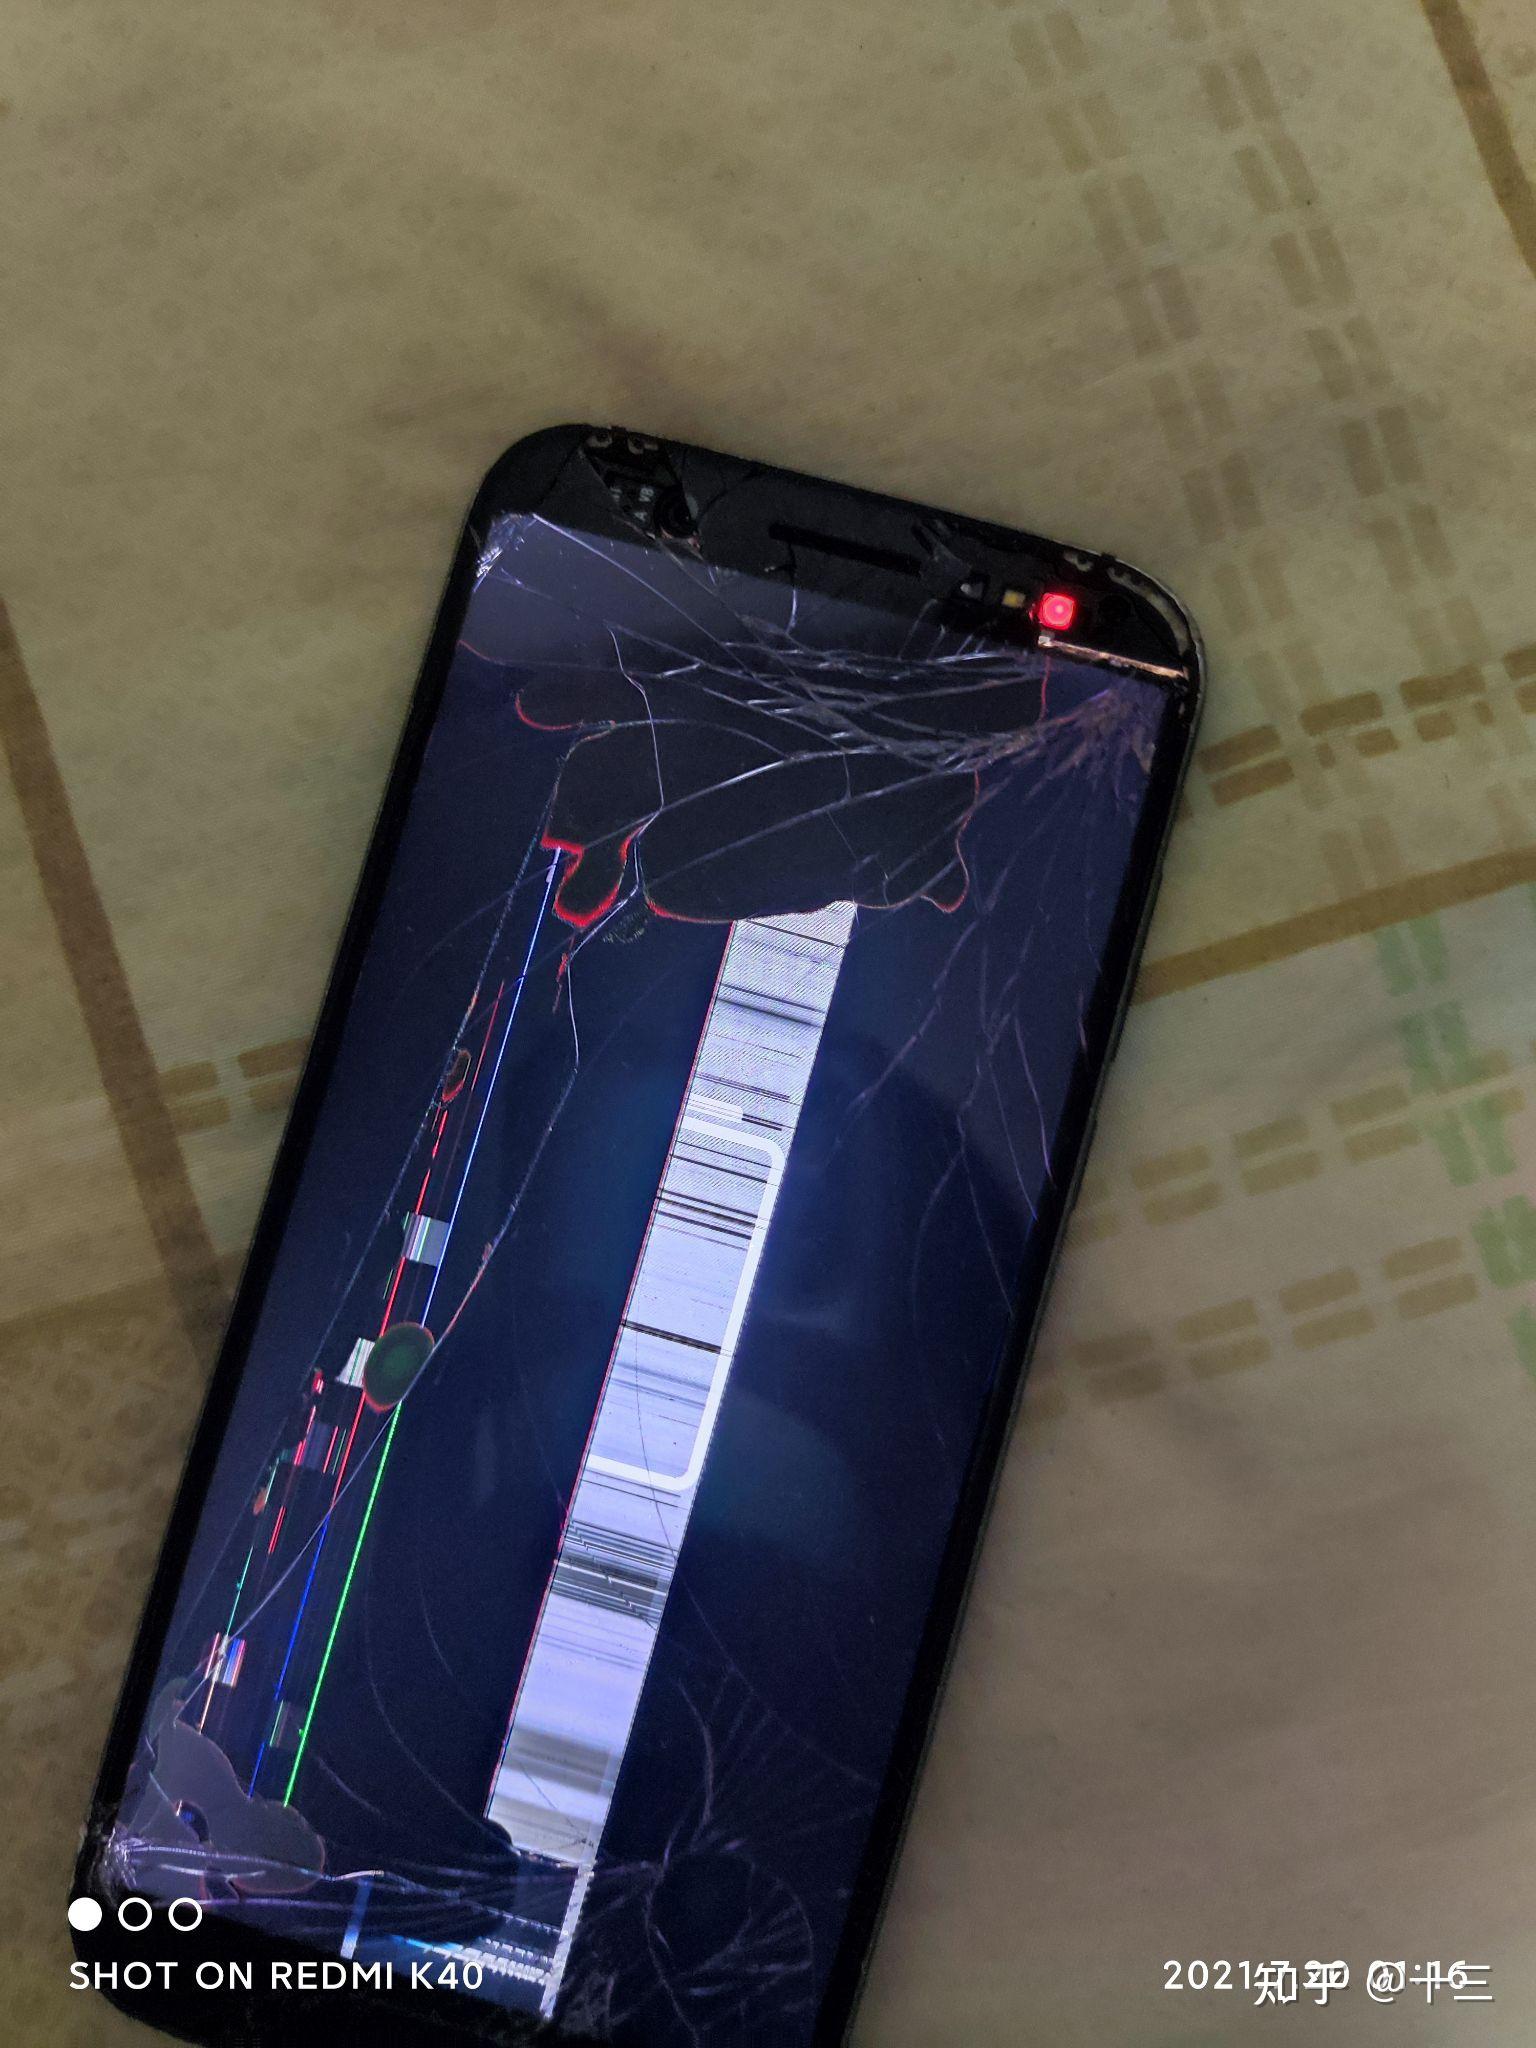 手机坏了的照片 真实图片